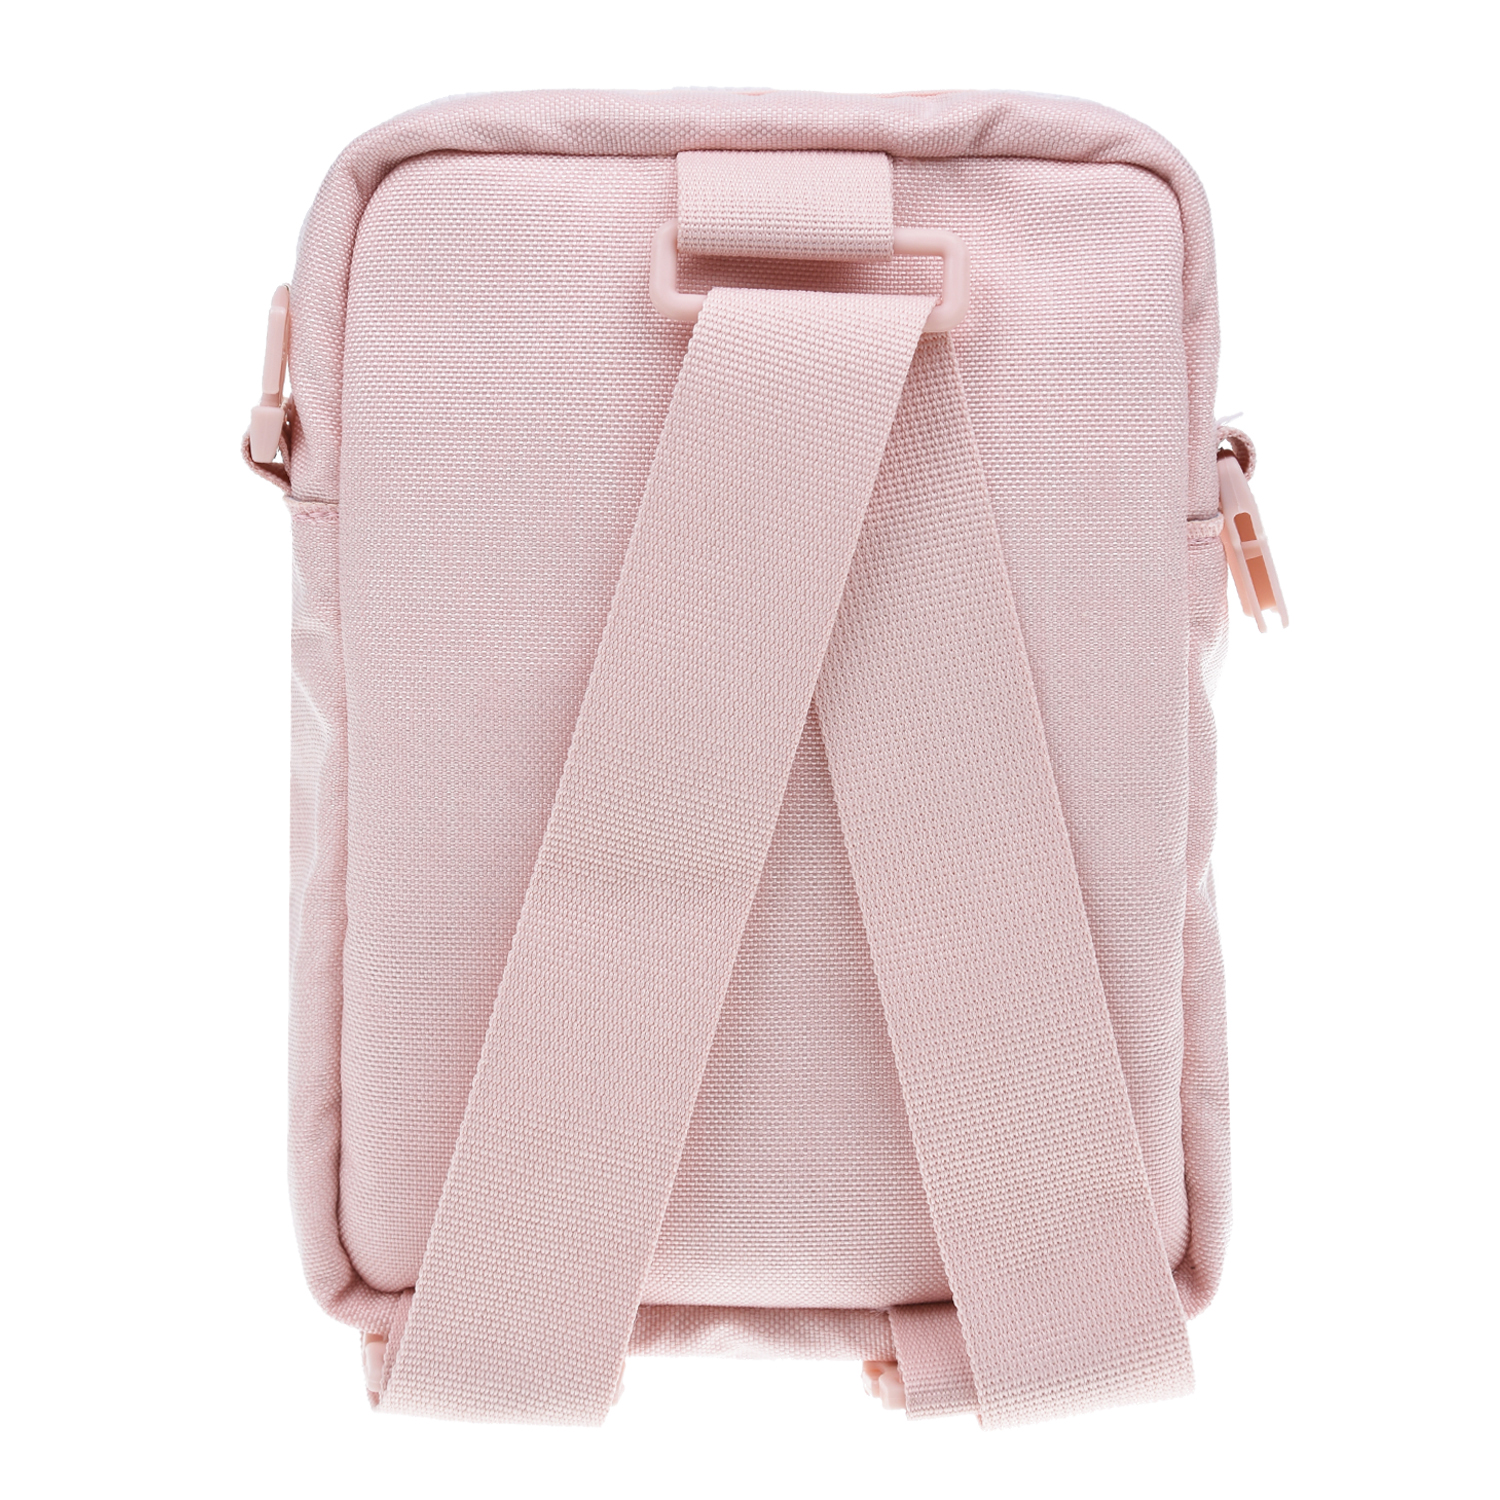 Розовый рюкзак 10х20х25 см Melissa детский, размер unica - фото 3